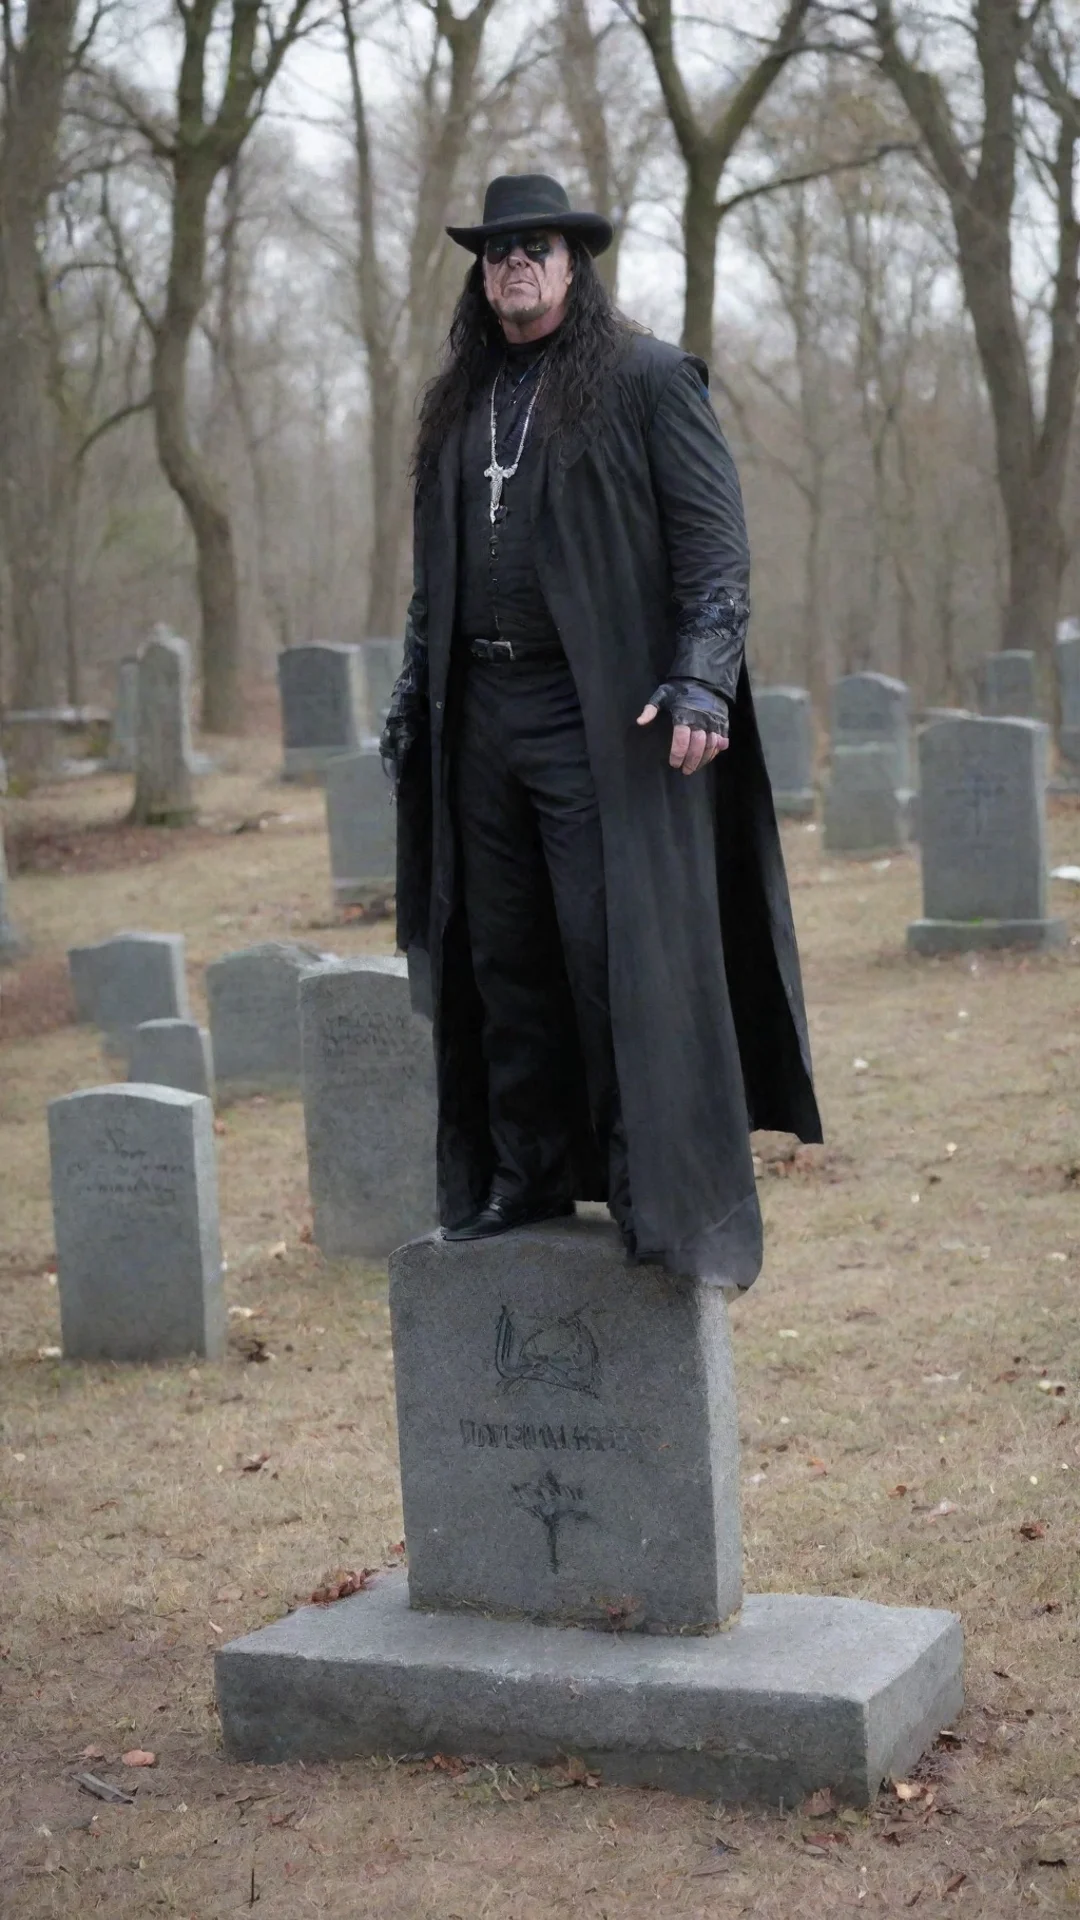 aiwwe undertaker graveyard tall